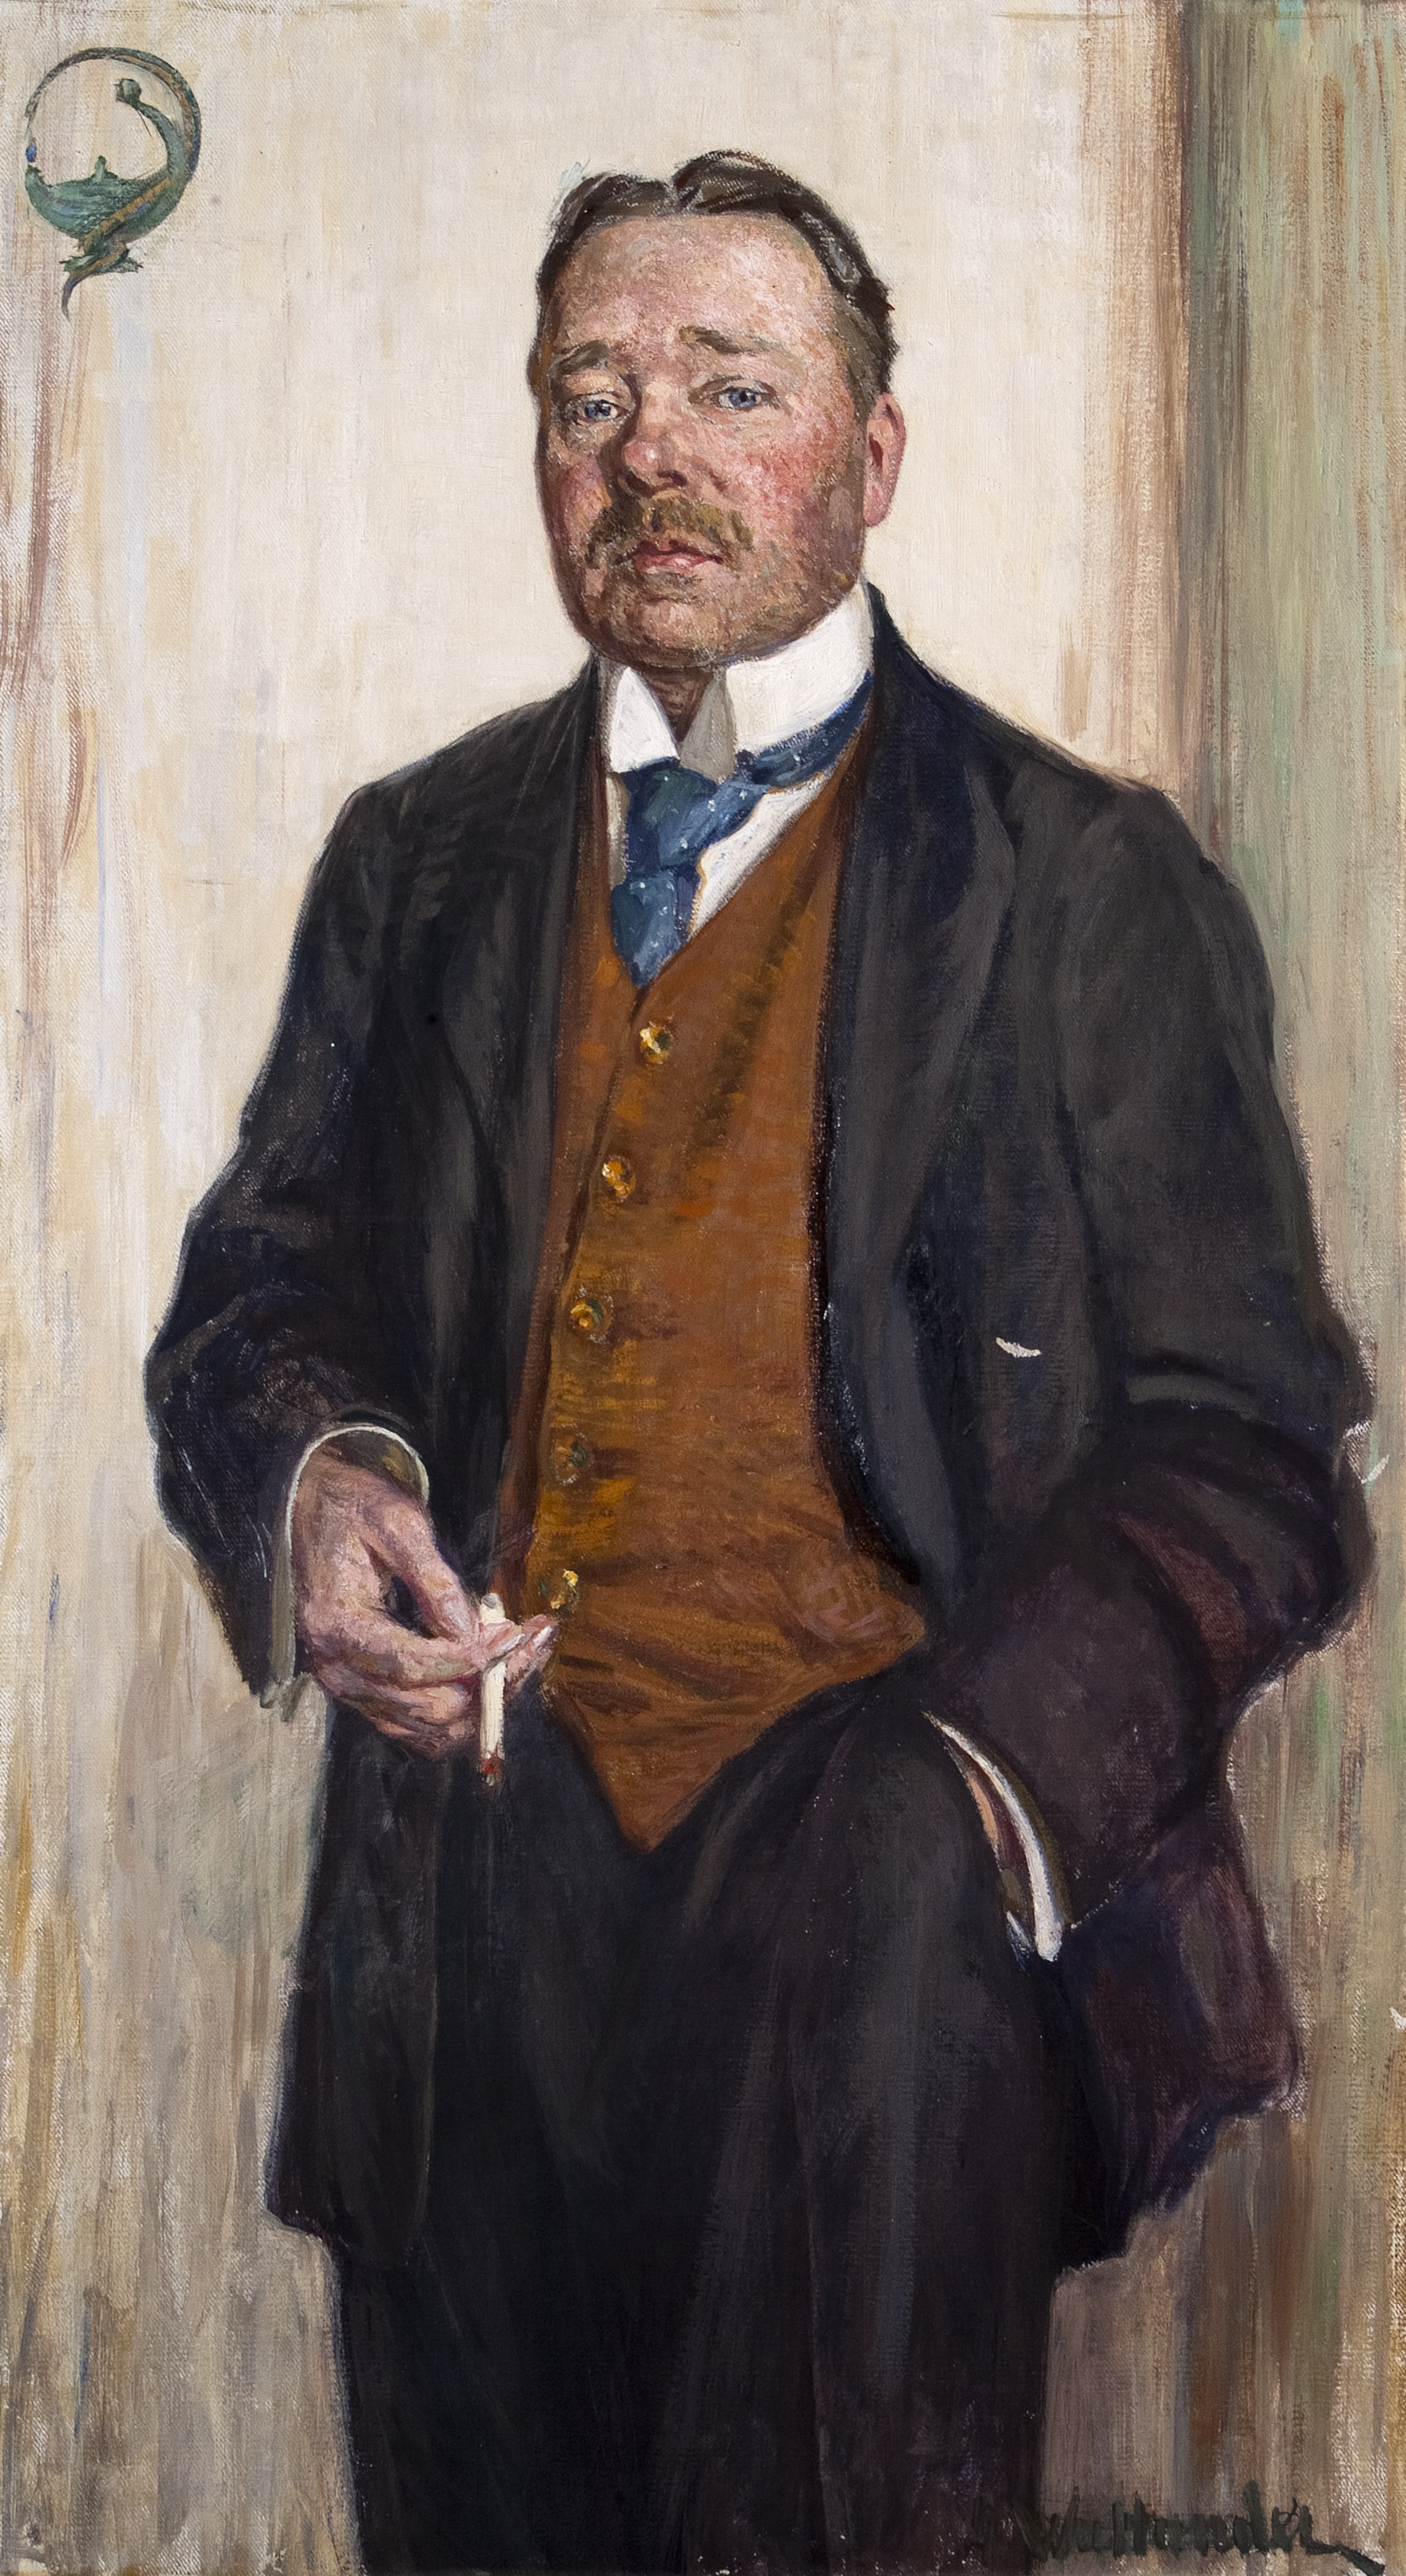 Gerda Wallander, "Porträtt av Hjalmar Söderberg", 1916, olja på duk.